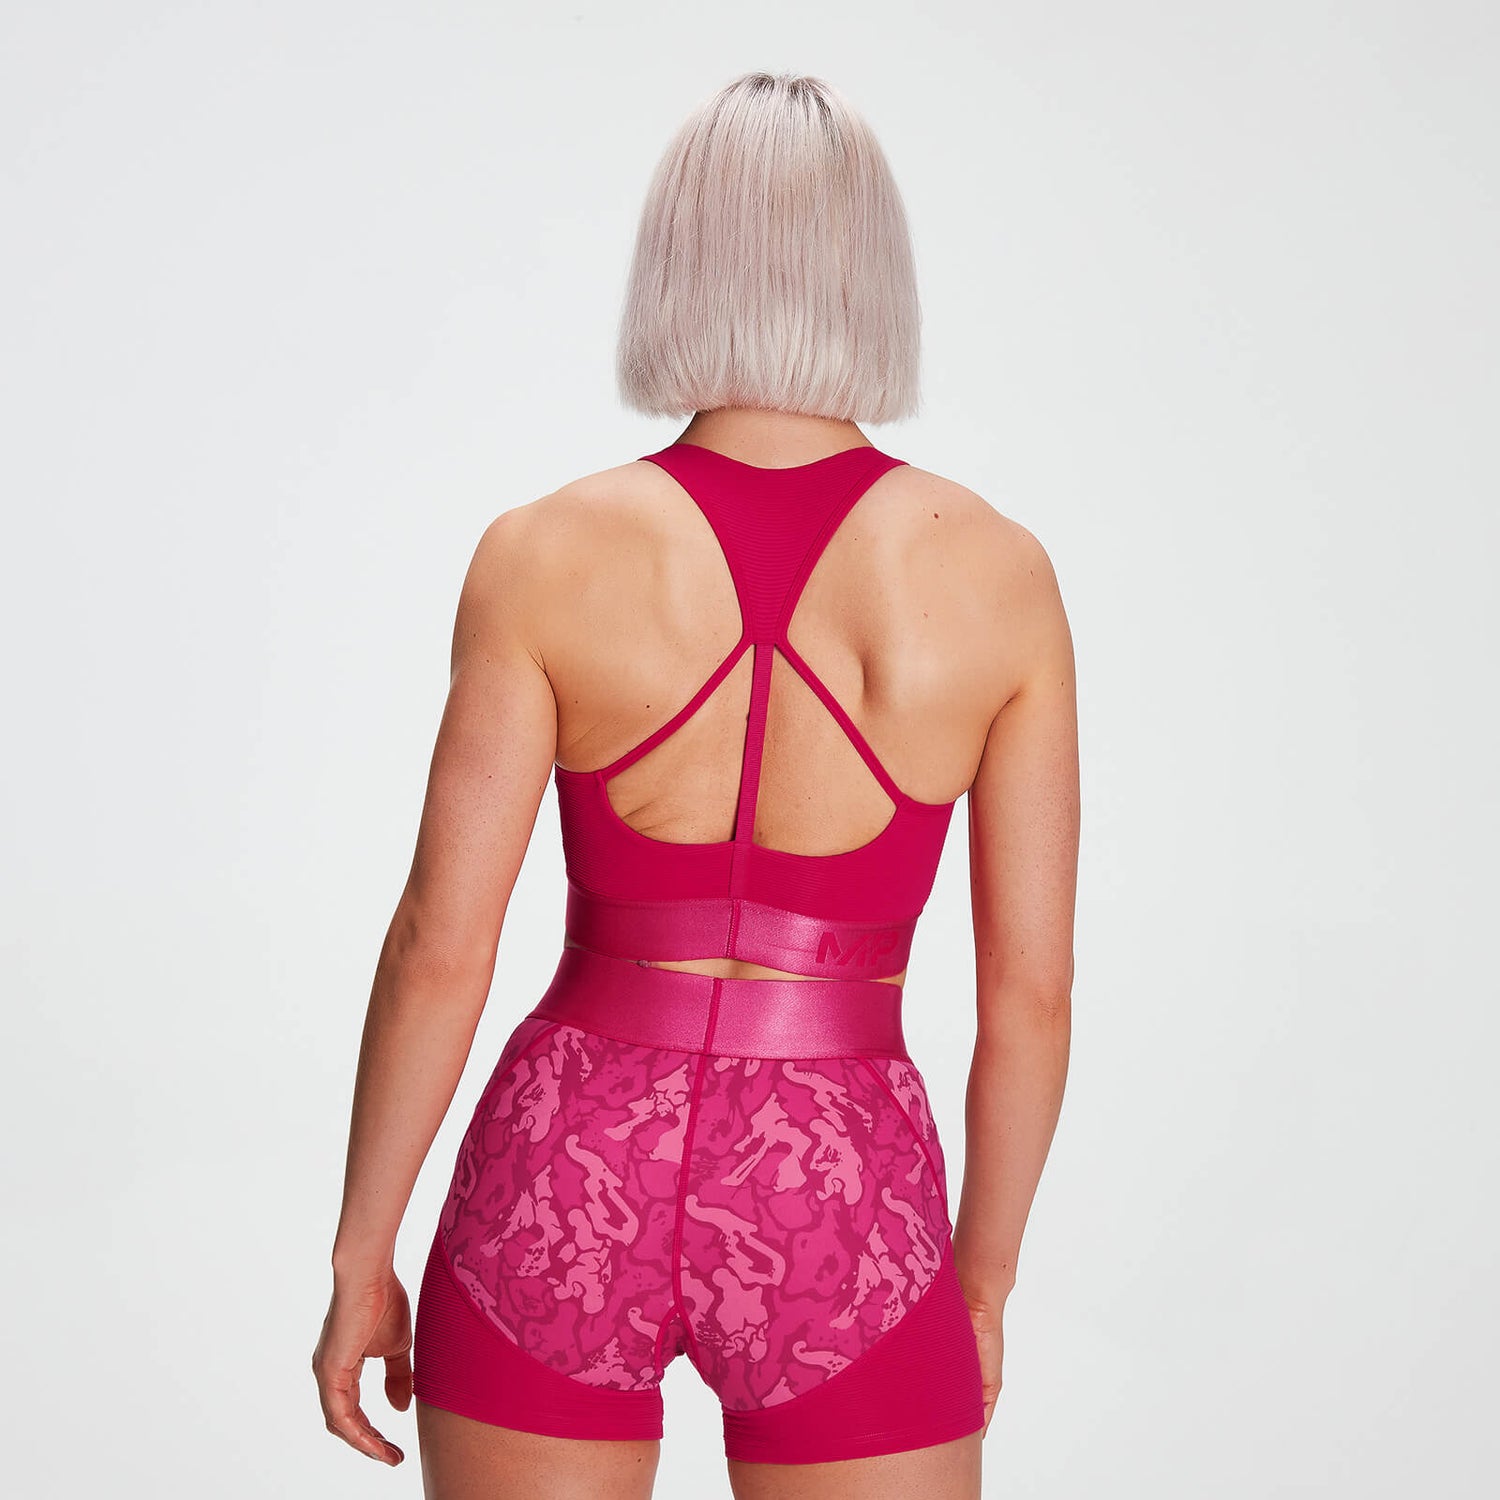 Bustieră sport texturată MP Adapt pentru femei - Virtual Pink - XXS